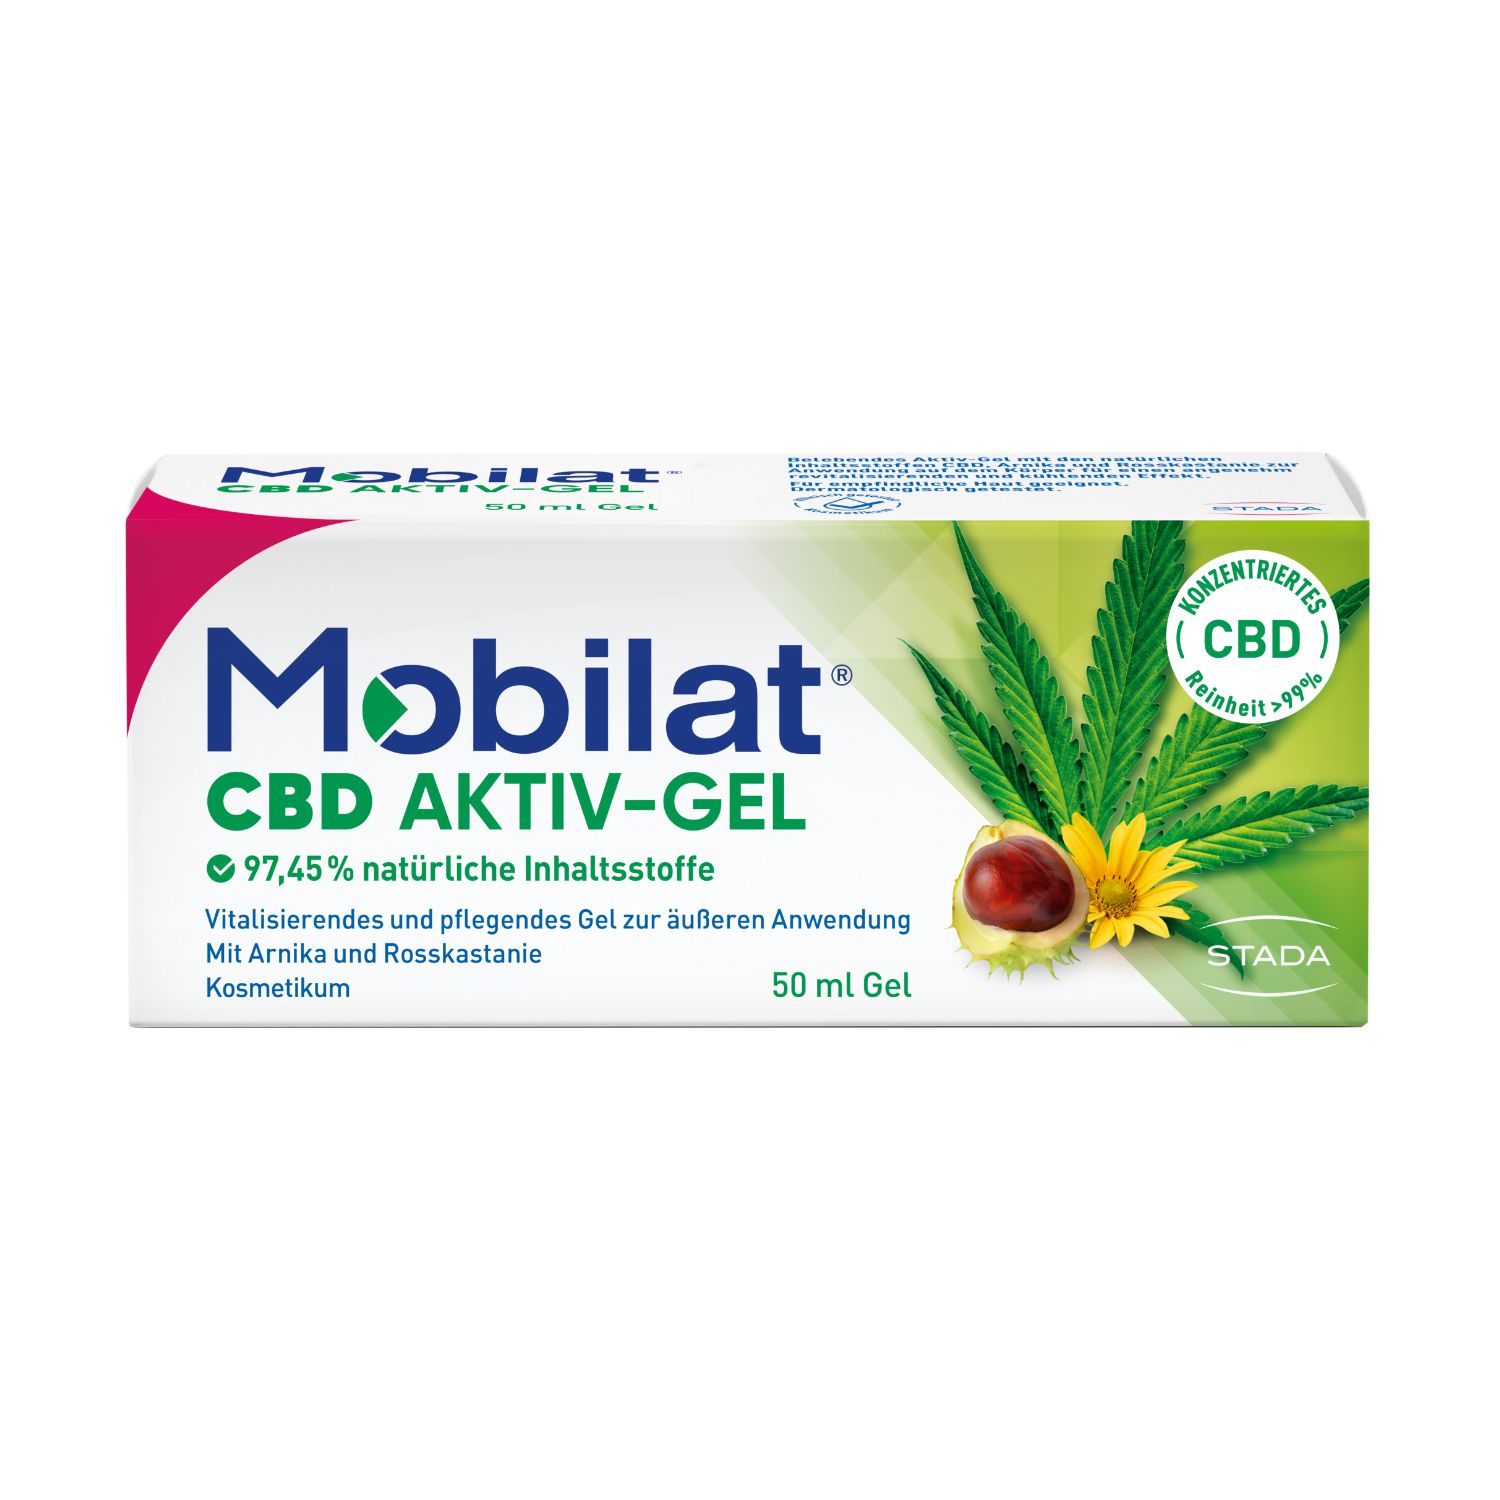 Mobilat® CBD Aktiv-Gel: vitalisierend, beruhigend, pflegend. Für beanspruchte Körperpartien.